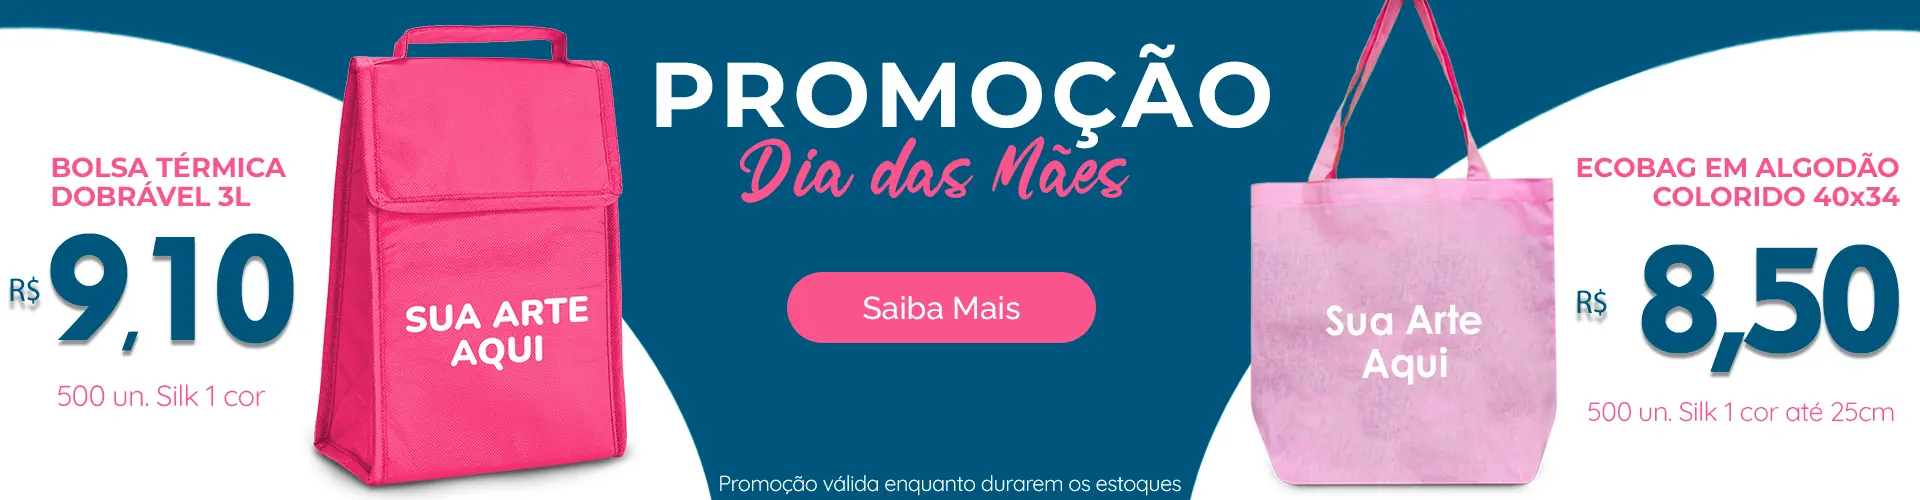 (c) Matbrindes.com.br